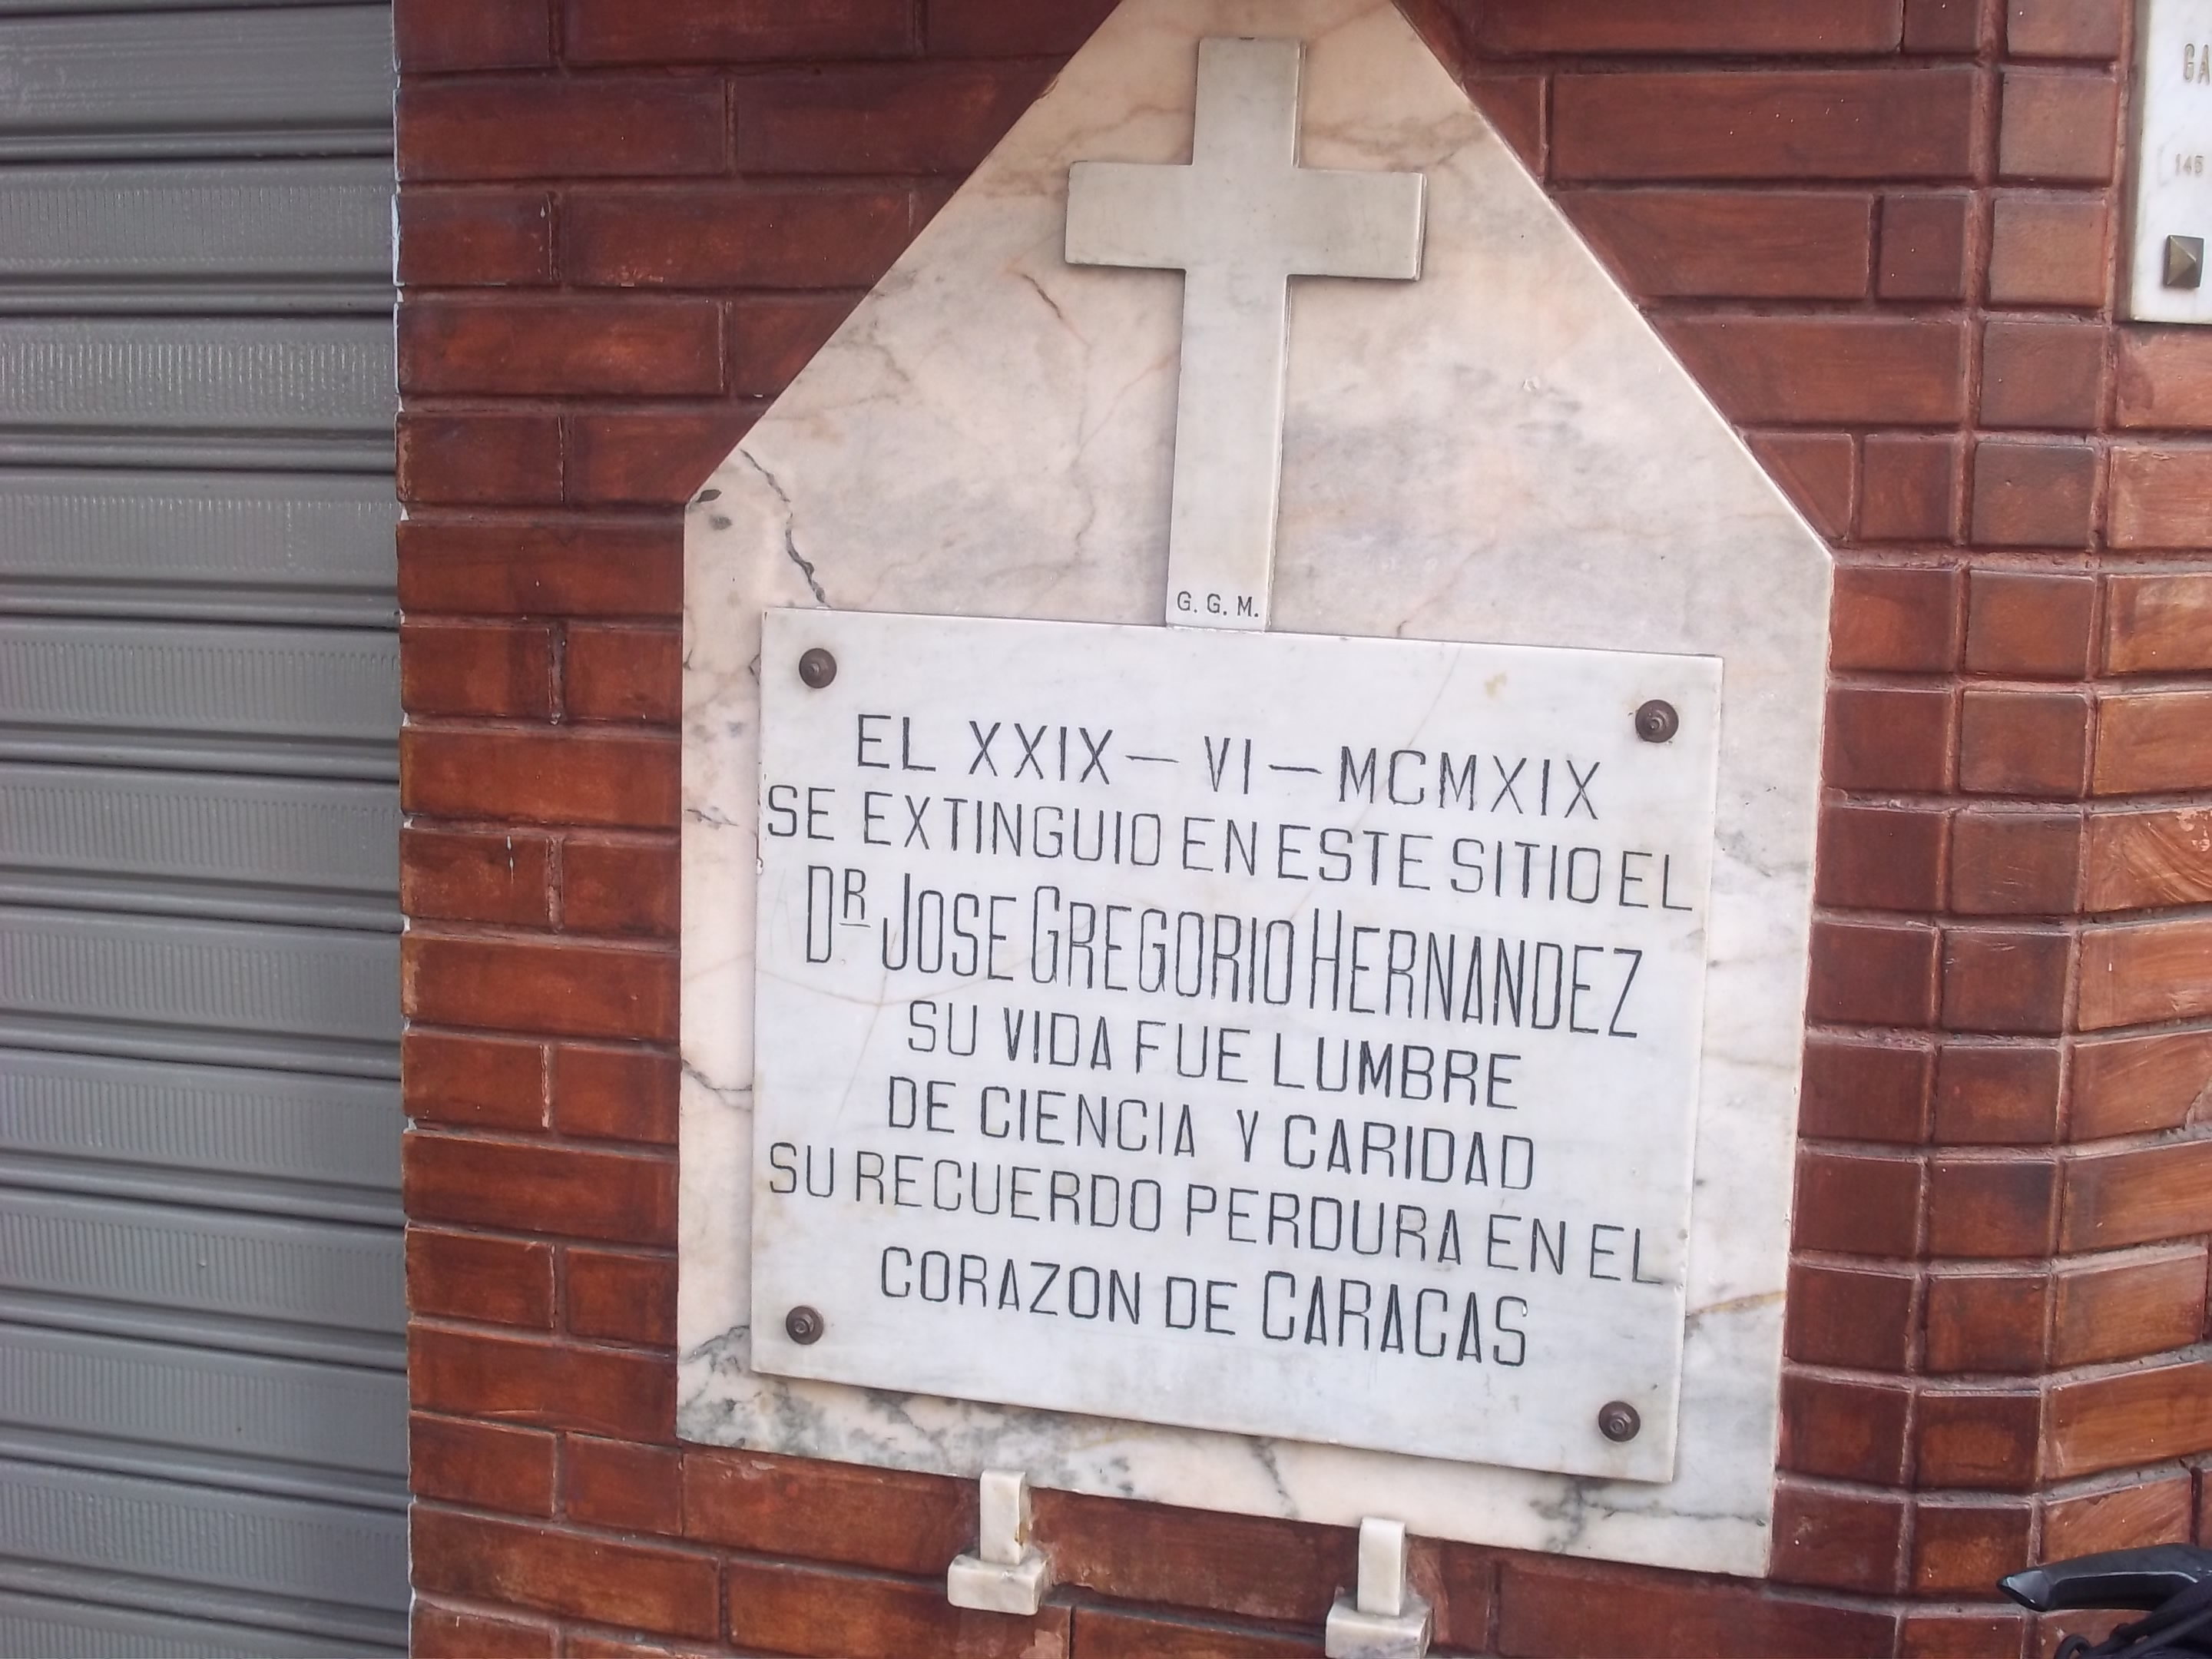 Piden restaurar casa del Dr. José Gregorio Hernández en Caracas transformada en estacionamiento (Fotos)